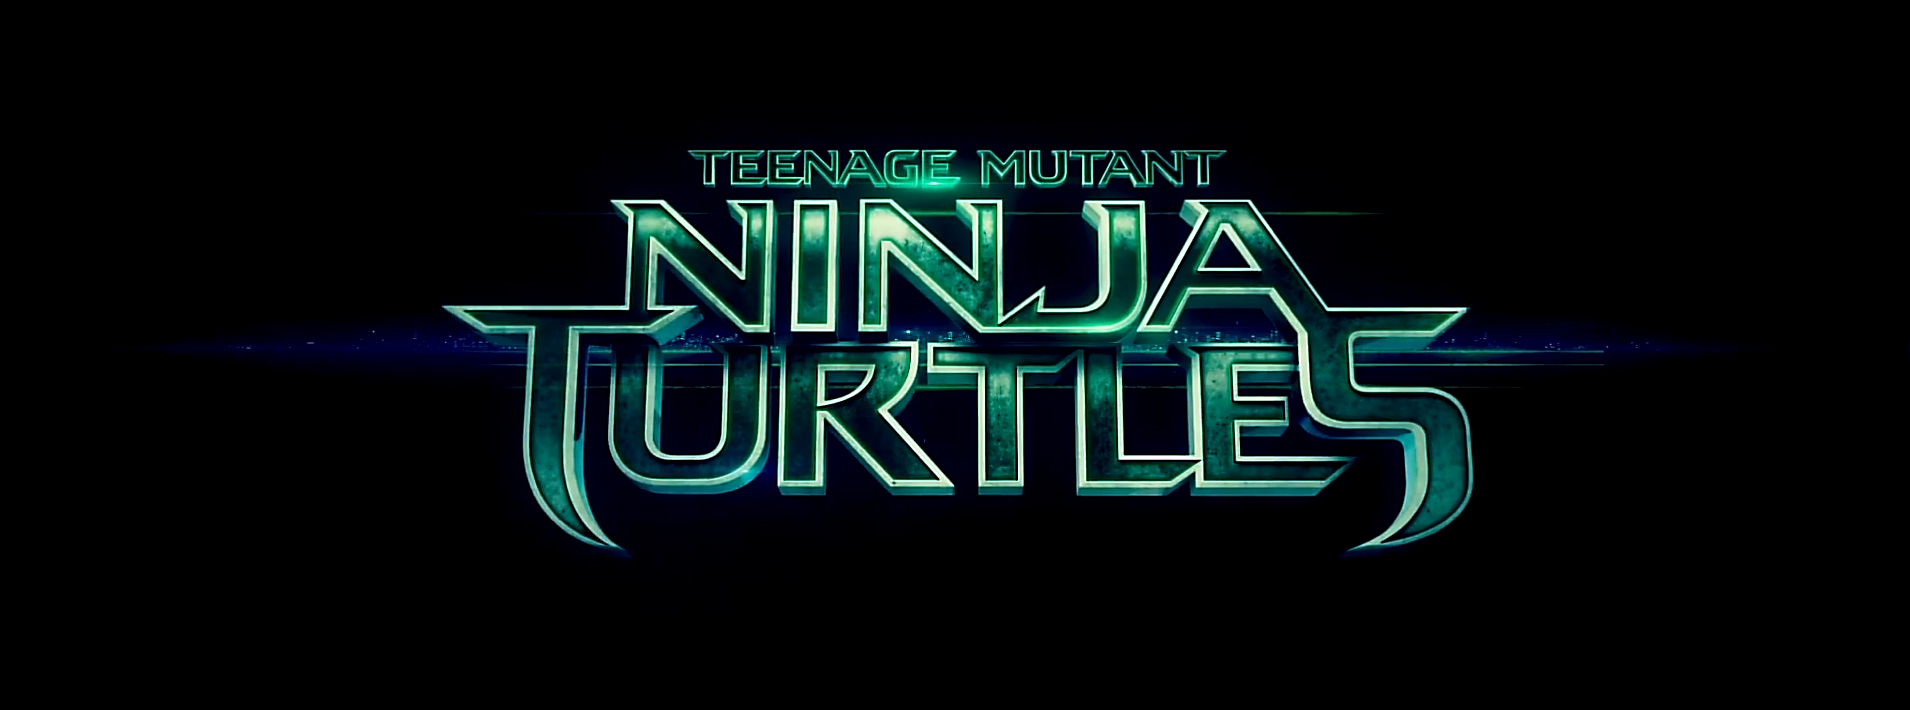 Teenage Mutant Ninja Turtles movie logo